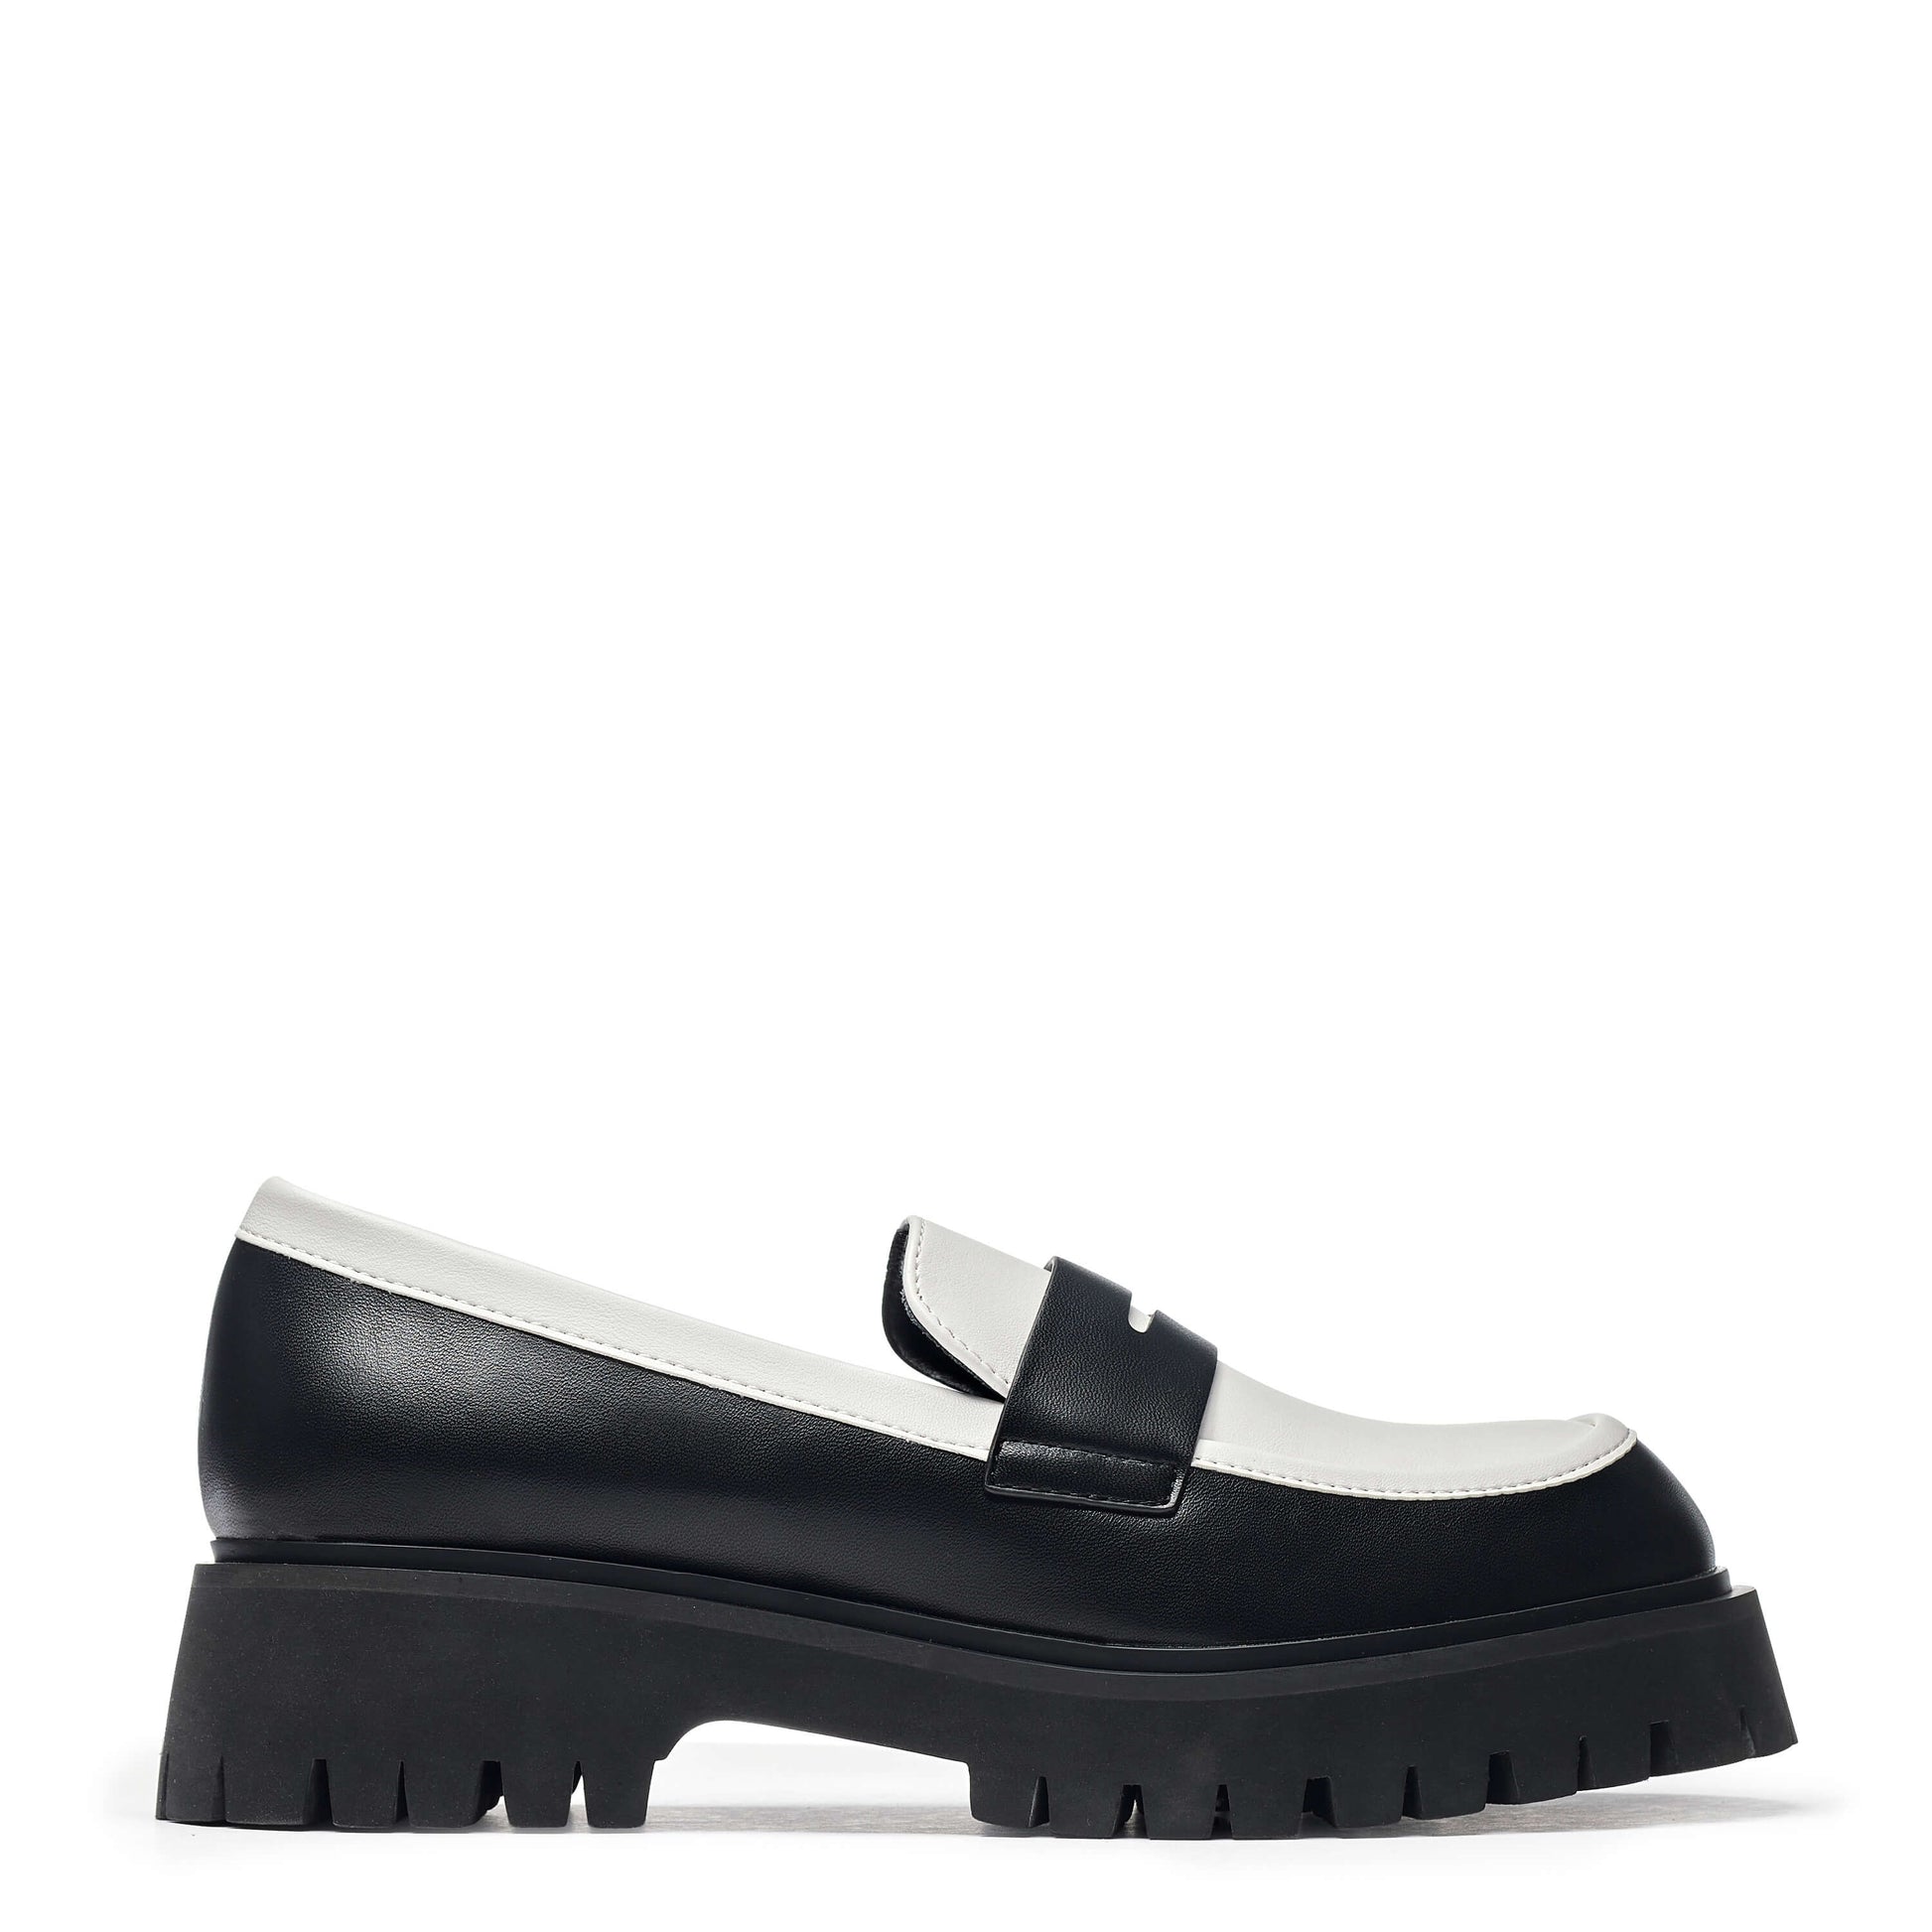 Birch Monochrome Loafers - Shoes - KOI Footwear - Multi - Side View